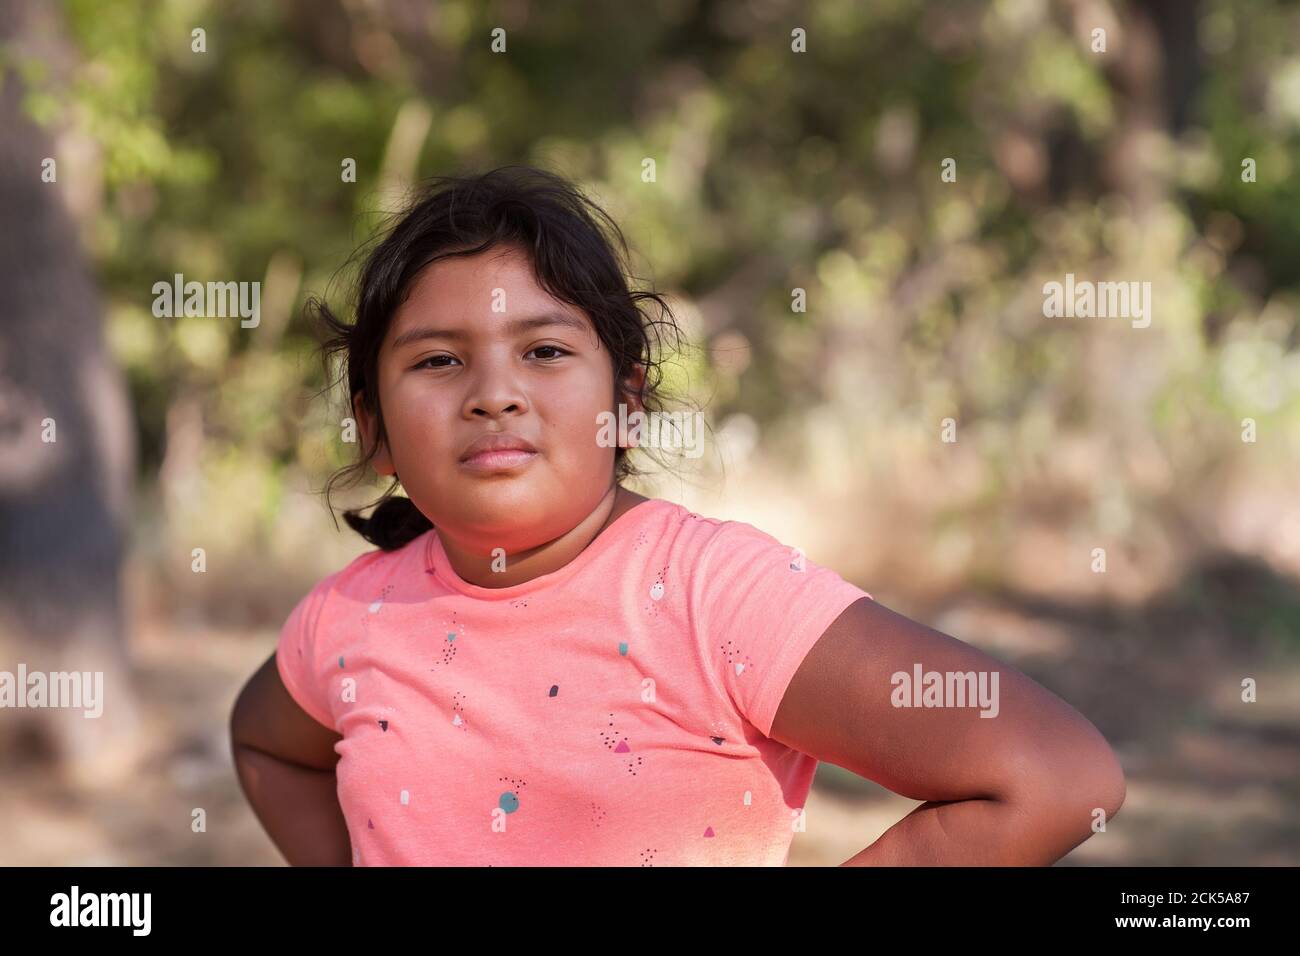 Ein junges Latino-Mädchen mit Armen, die auf ihren Hüften ruhen und eine aggressive Haltung ausdrücken, feindselig oder einschüchternd. Stockfoto